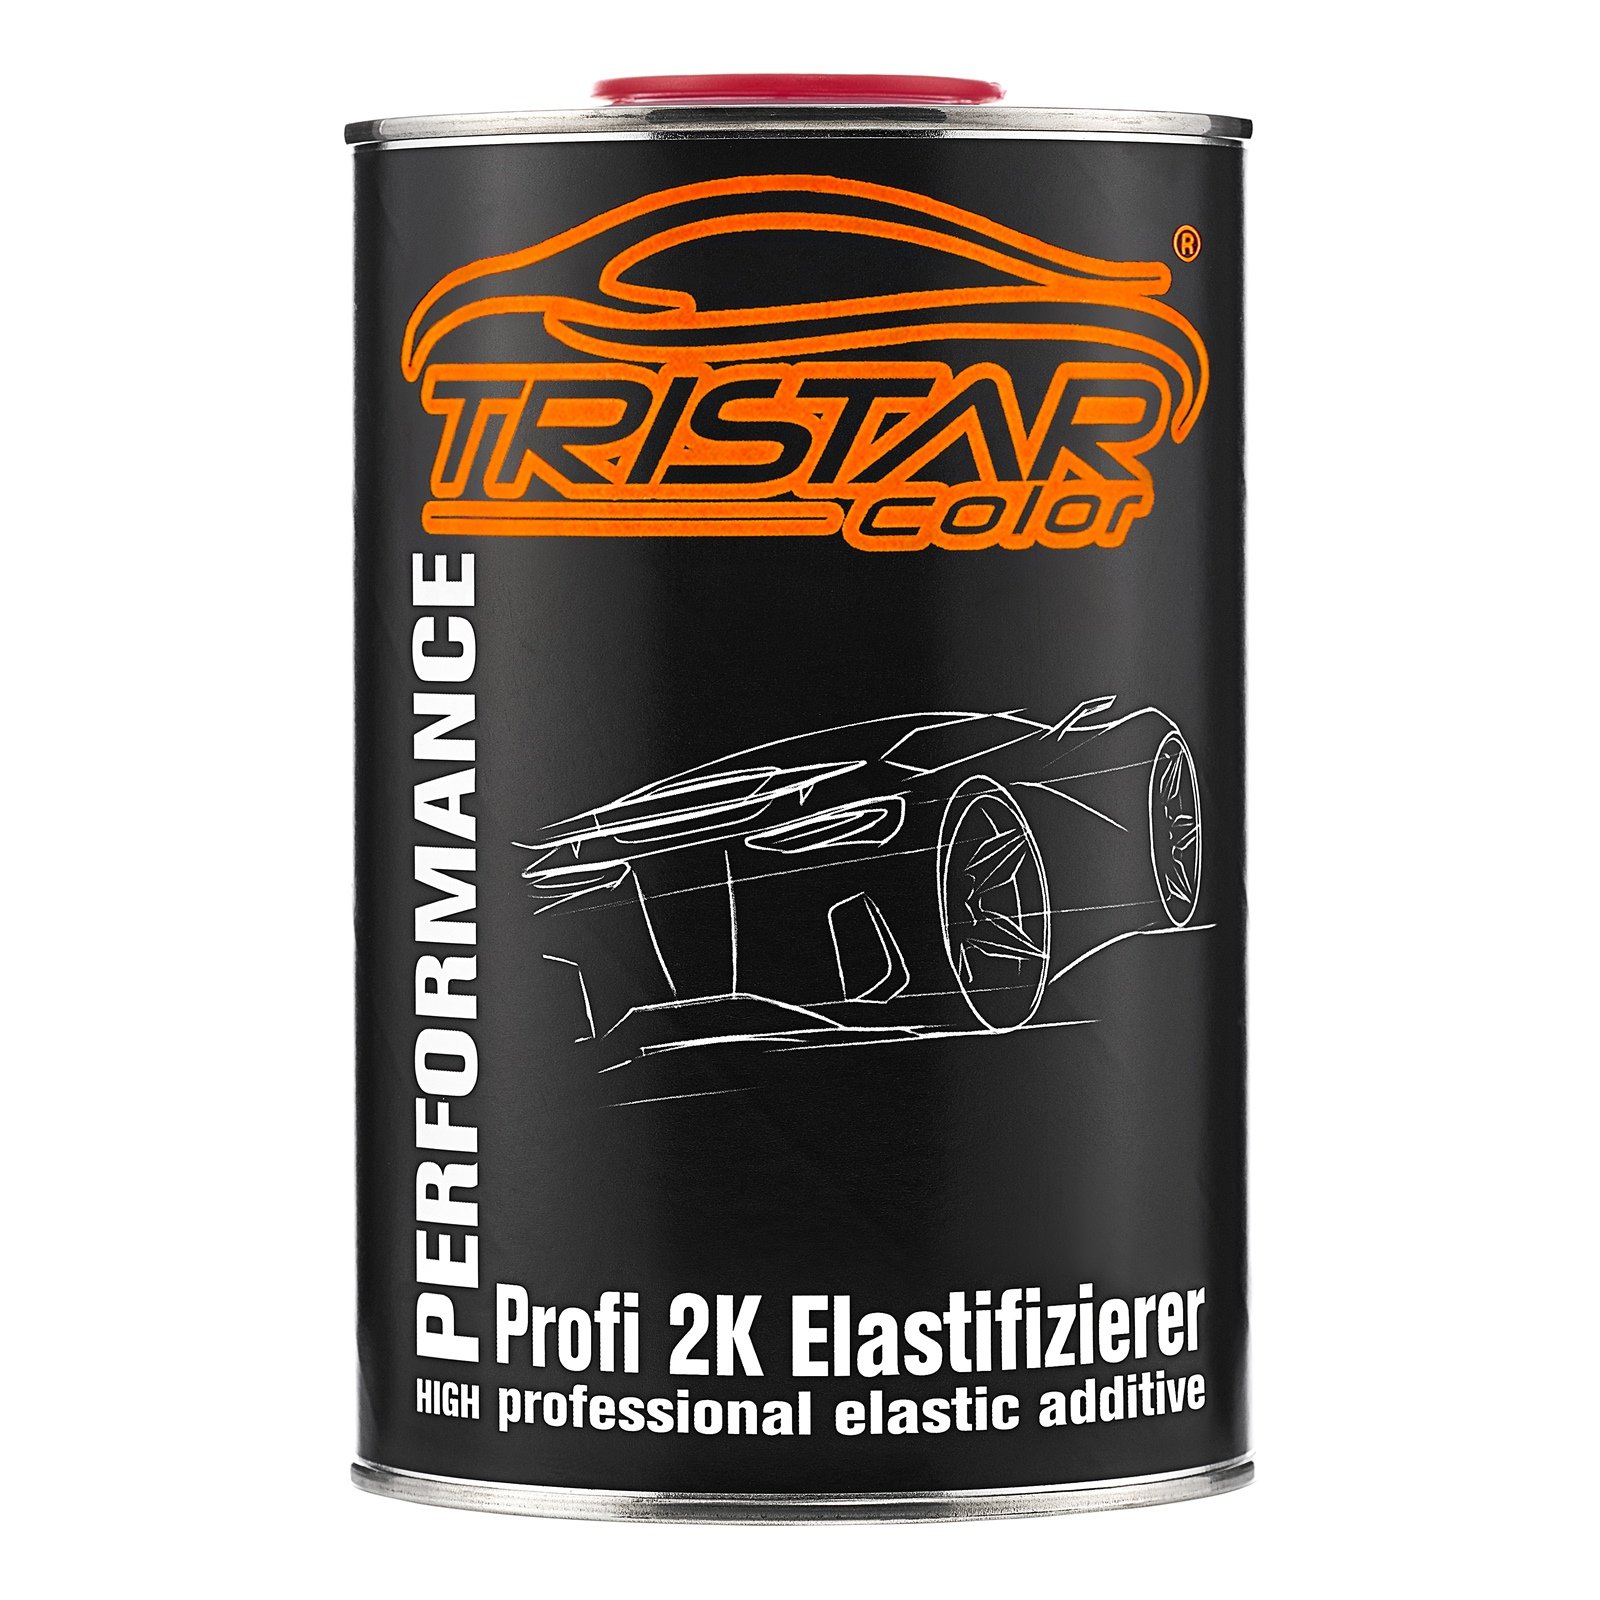 TRISTARcolor Elastifizierer Weichmacher Elastic Additiv für 2K Füller Autolack und Klarlack 1,0 Liter von TRISTARcolor